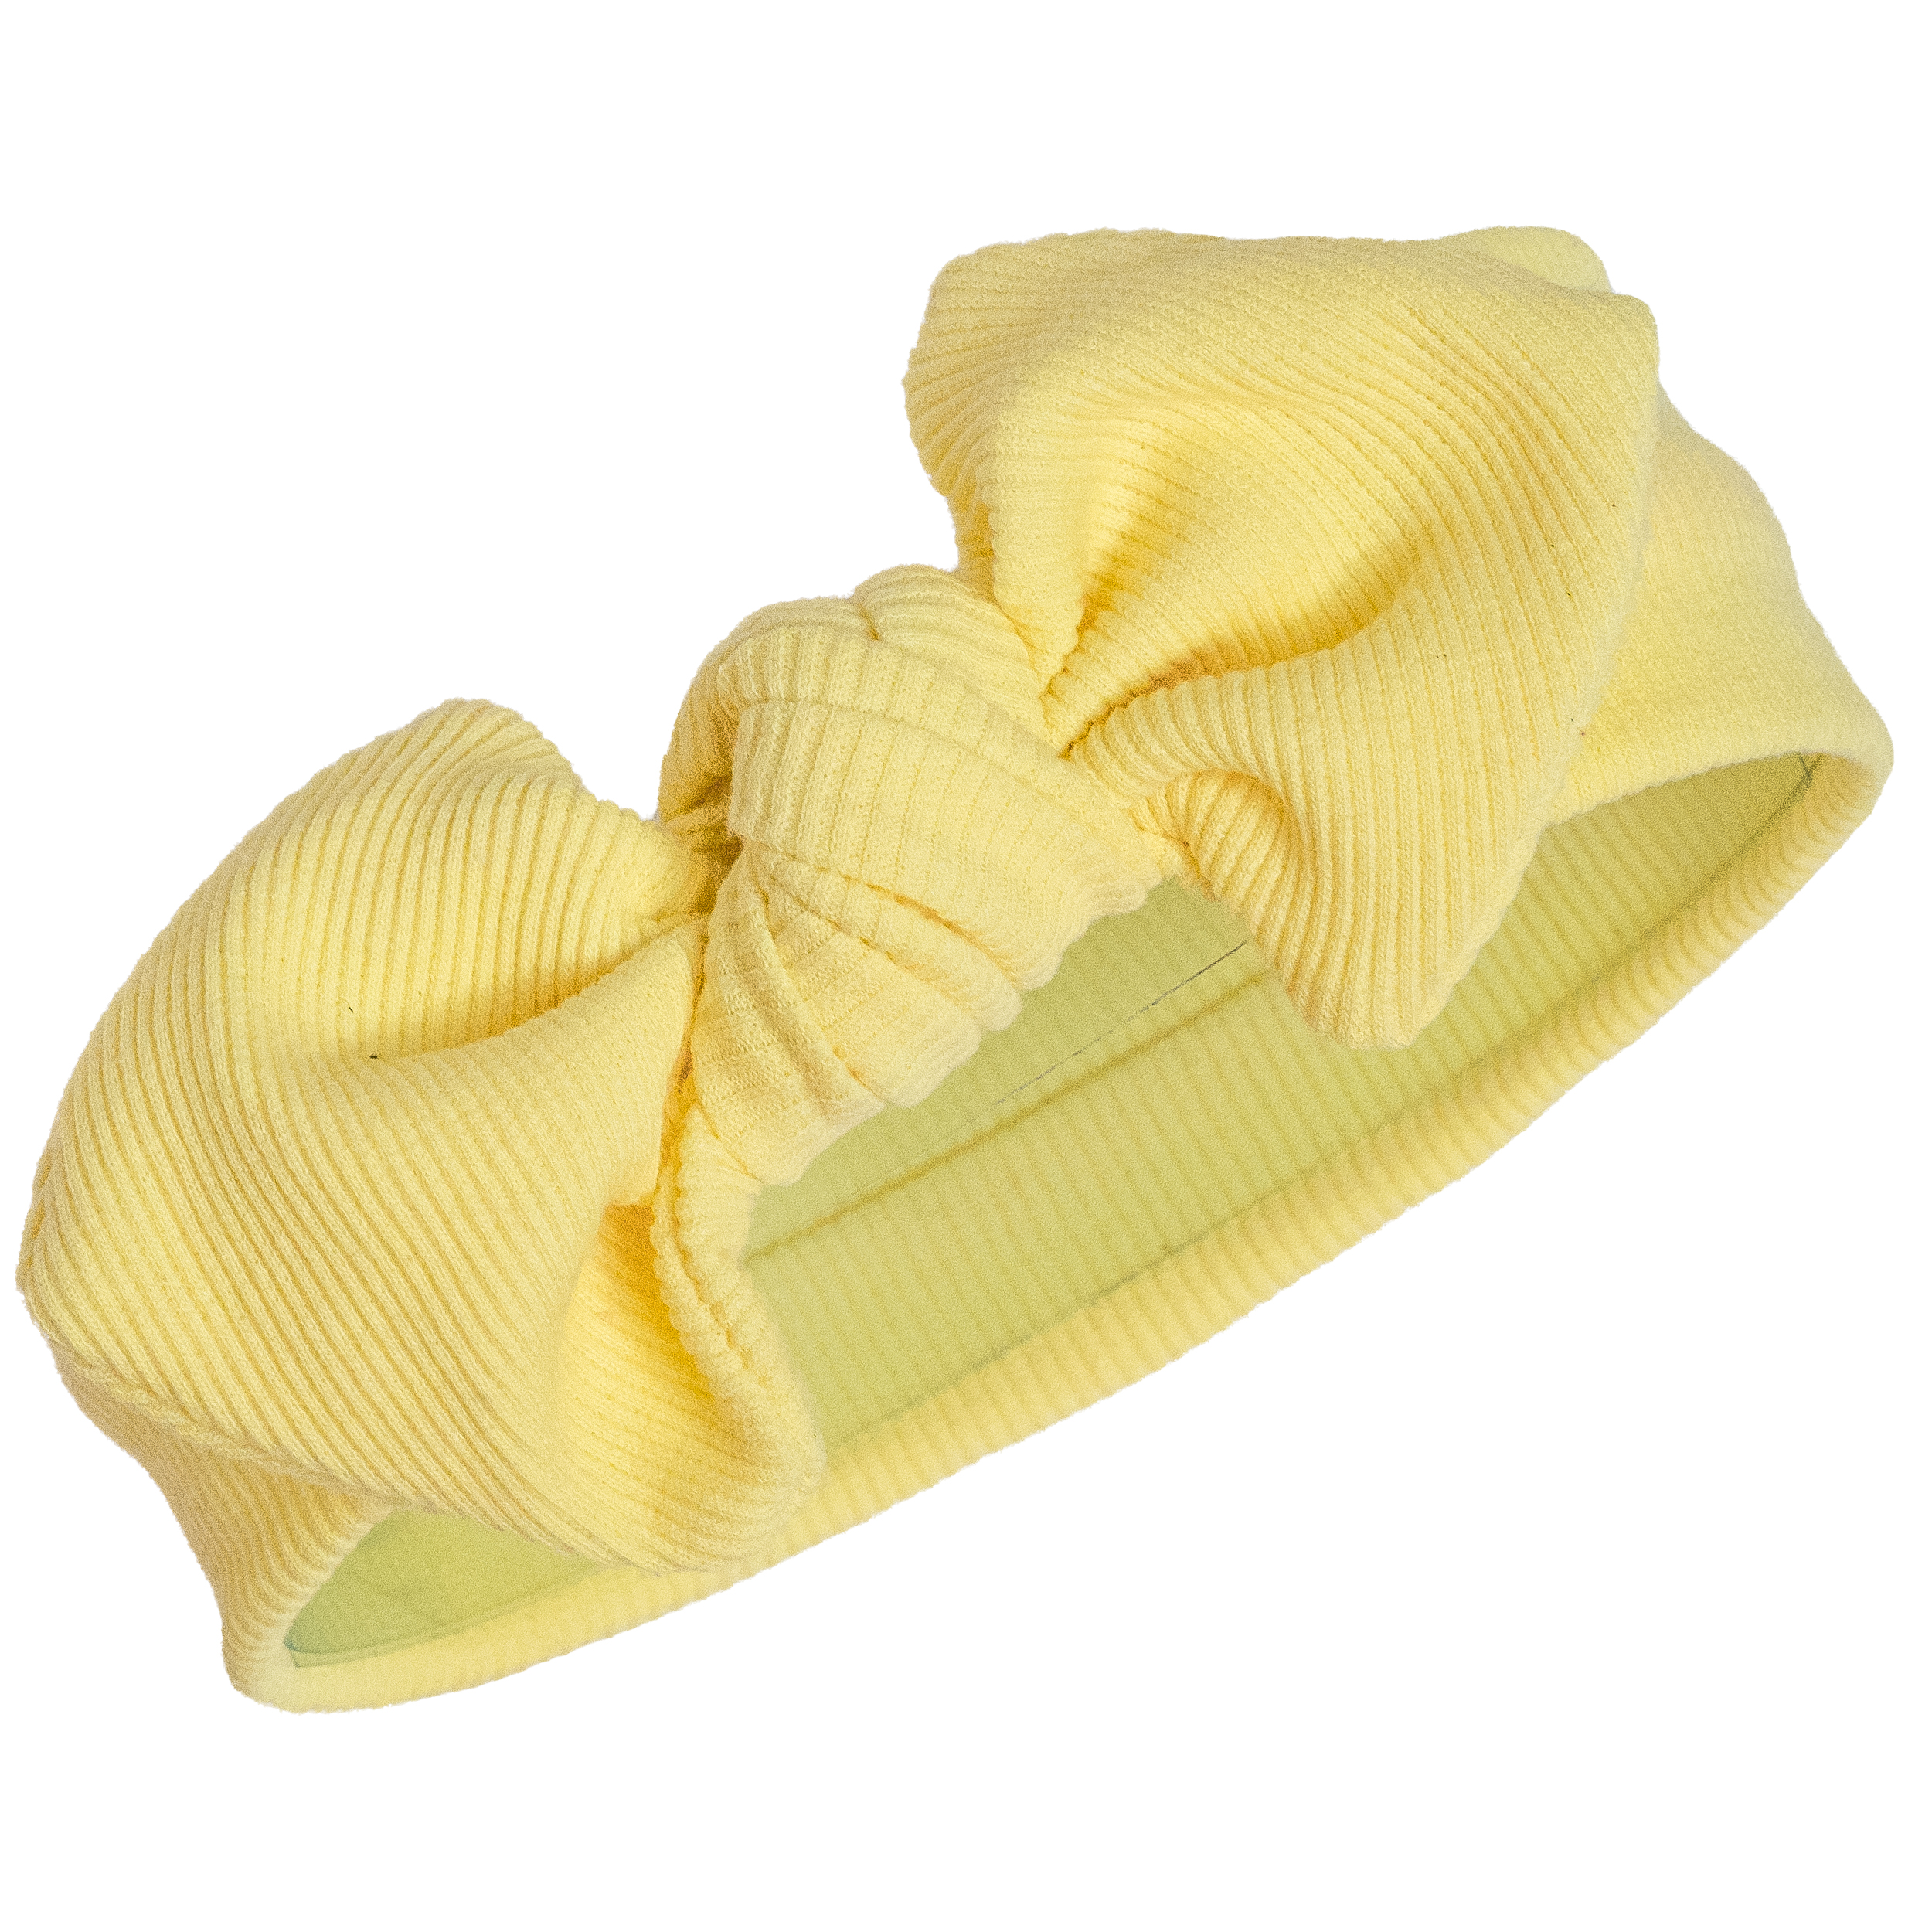 هدبند نوزادی مدل کبریتی رنگ لیمویی